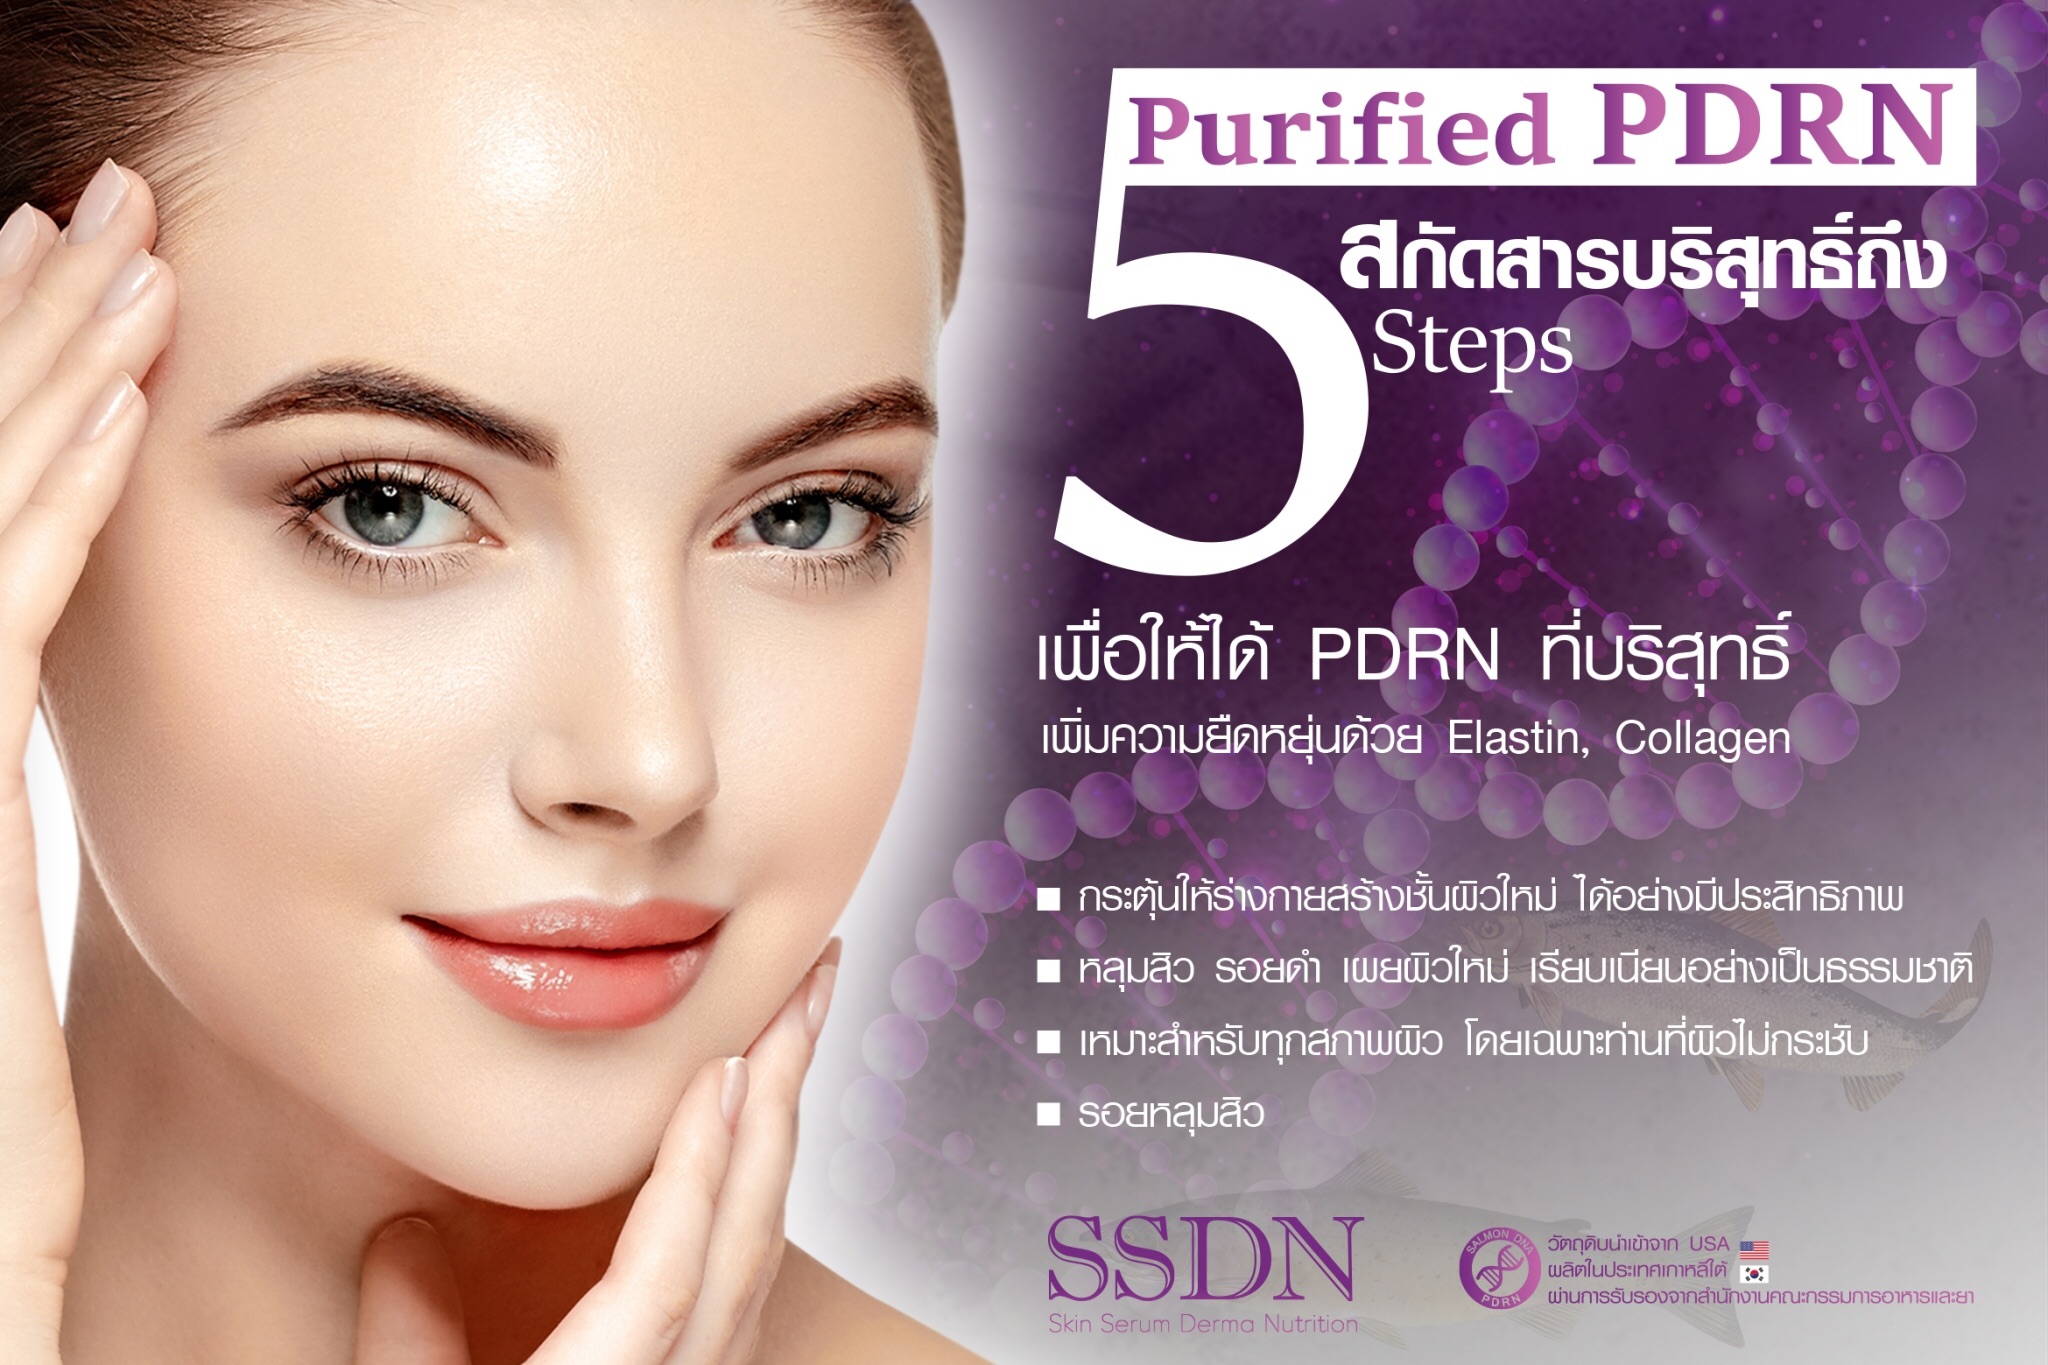 SSDN Skin Serum Derma Nutrition